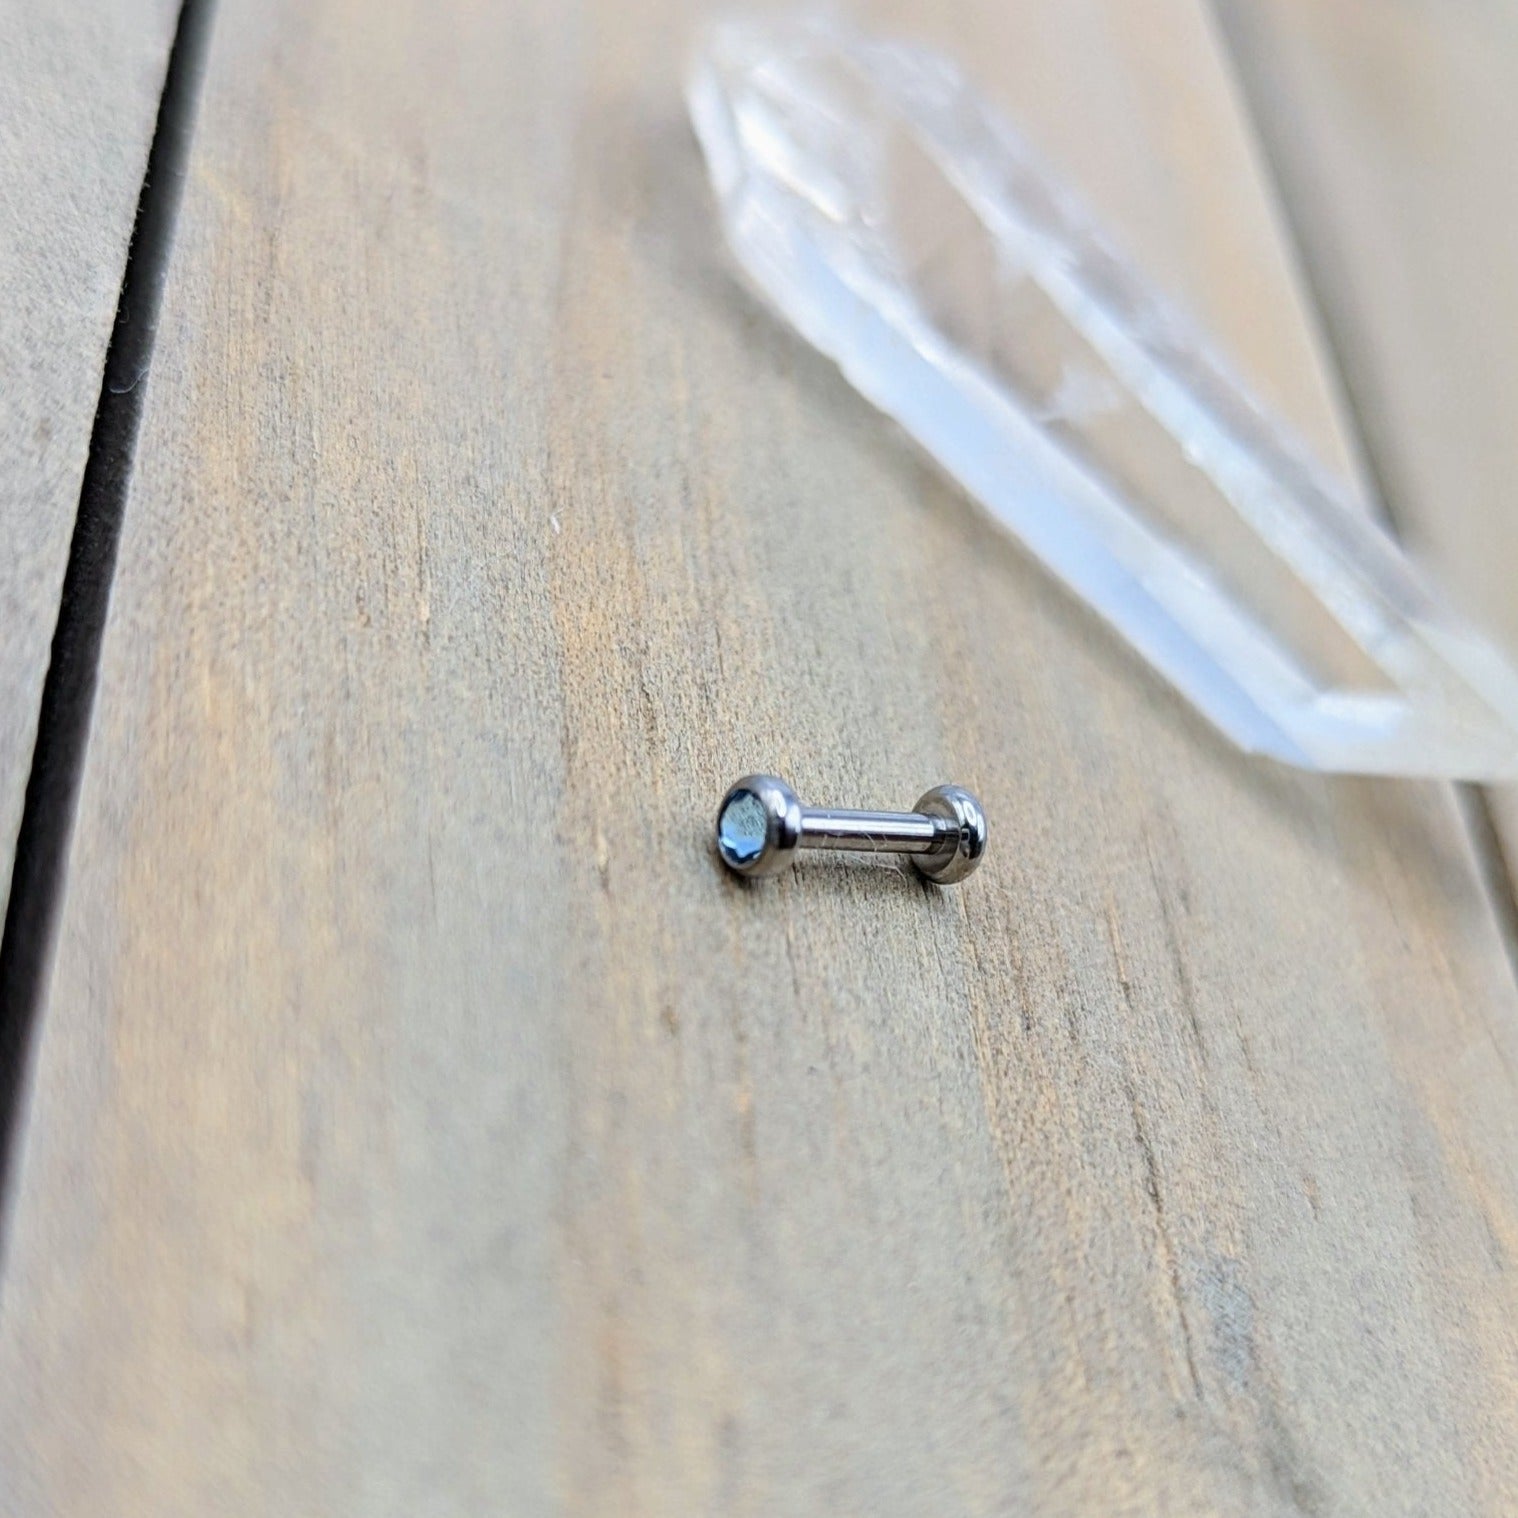 16g aqua gemstone titanium flat back earring stud